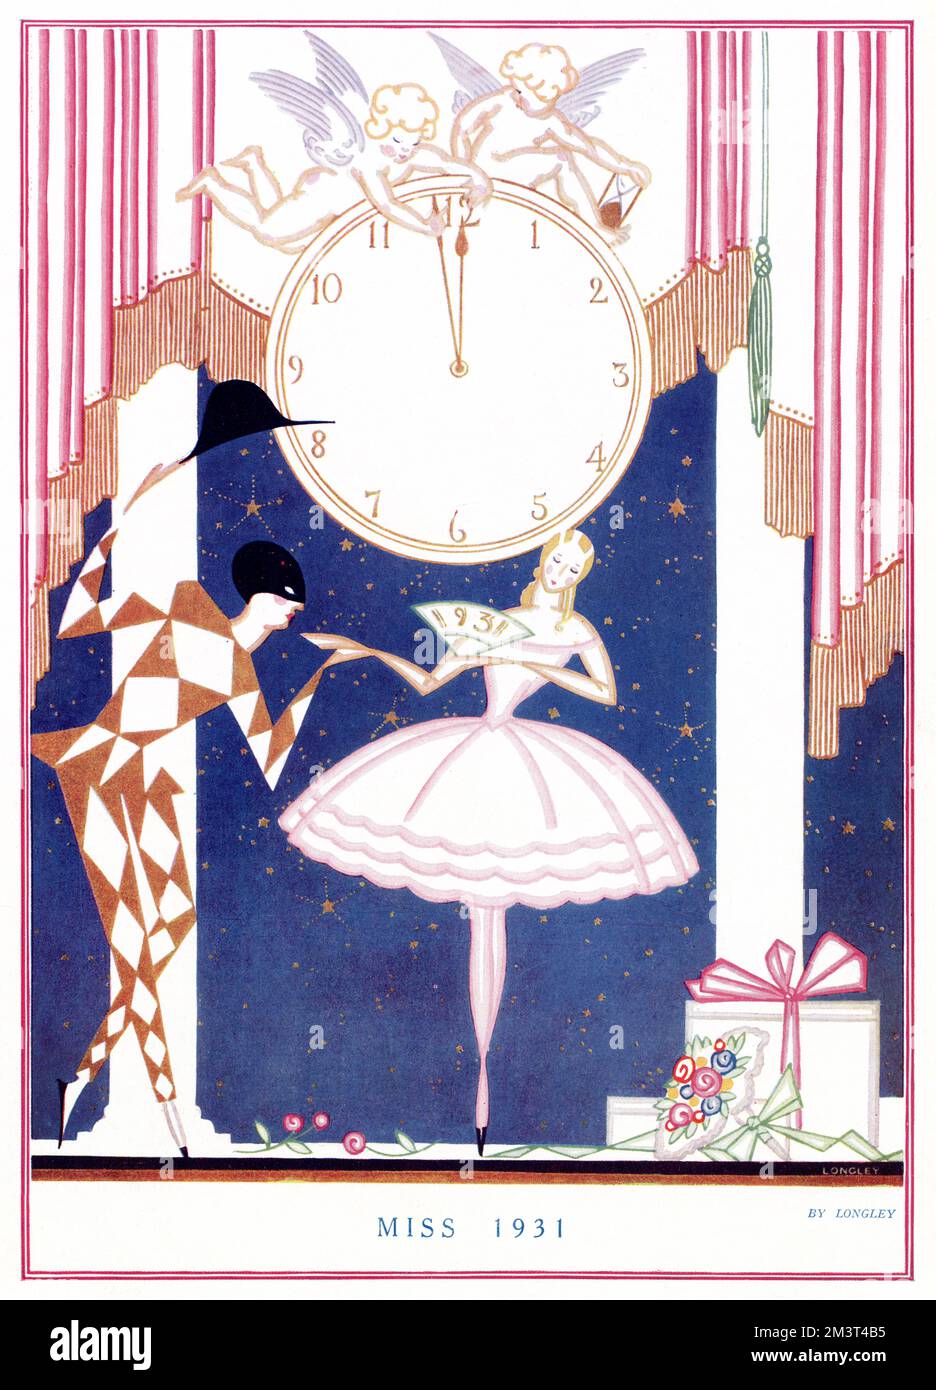 Illustrazione stilizzata e art deco con Harlequin e Columbine in piedi sotto un orologio mentre si trasforma a mezzanotte e inaugura il nuovo anno. Foto Stock